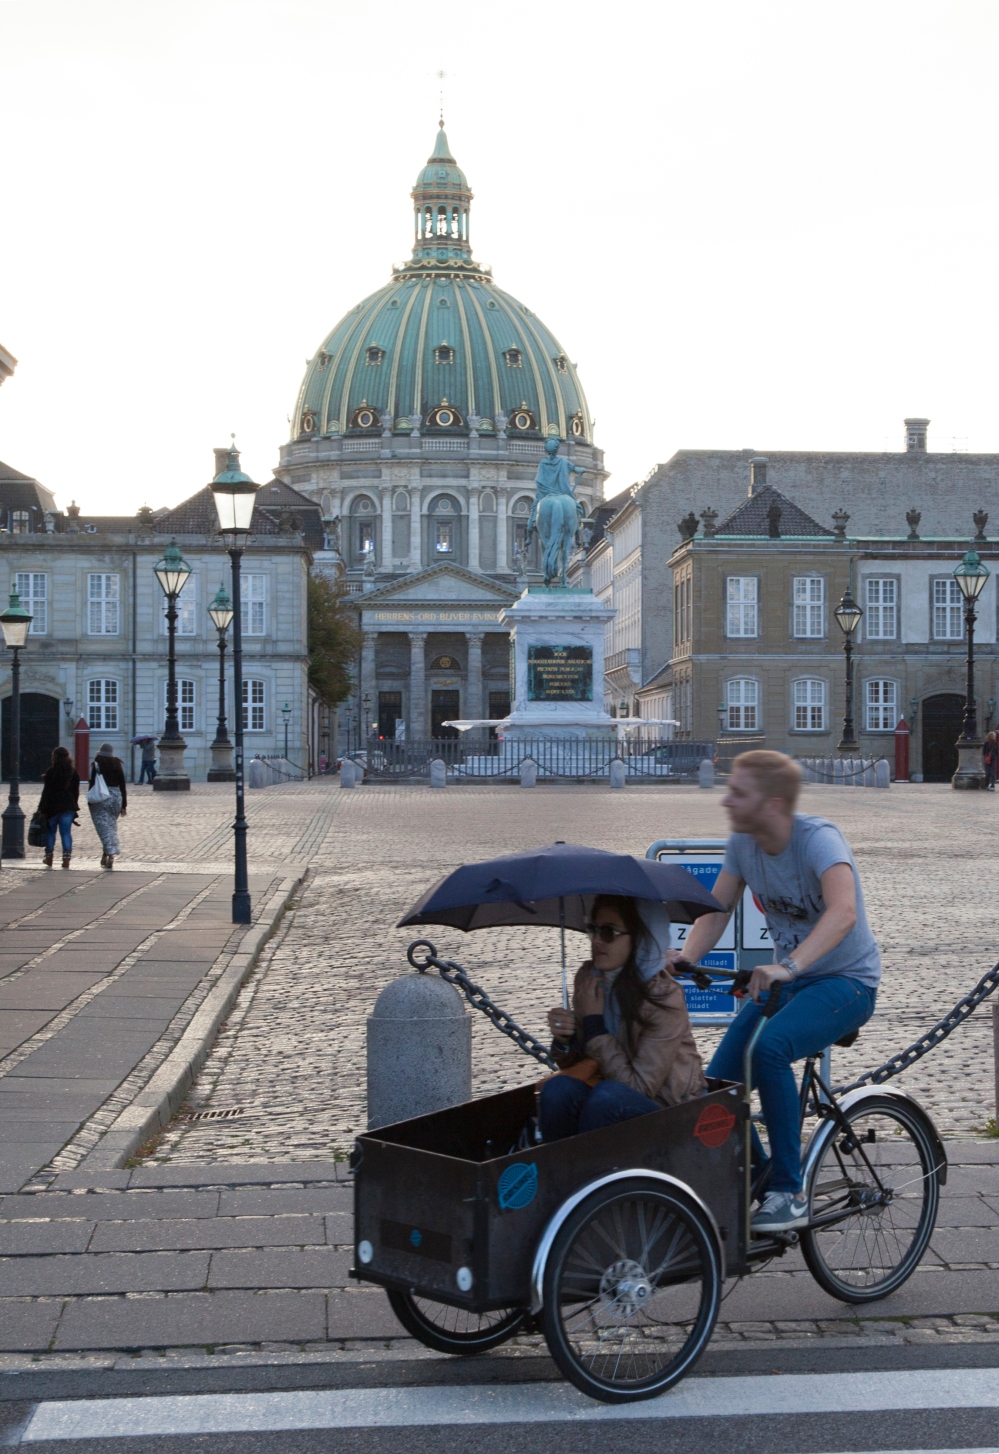 LADCYKEL1_Copenhagen, cargobike in front of Amalienborg Palace_Kim Wyon.jpg